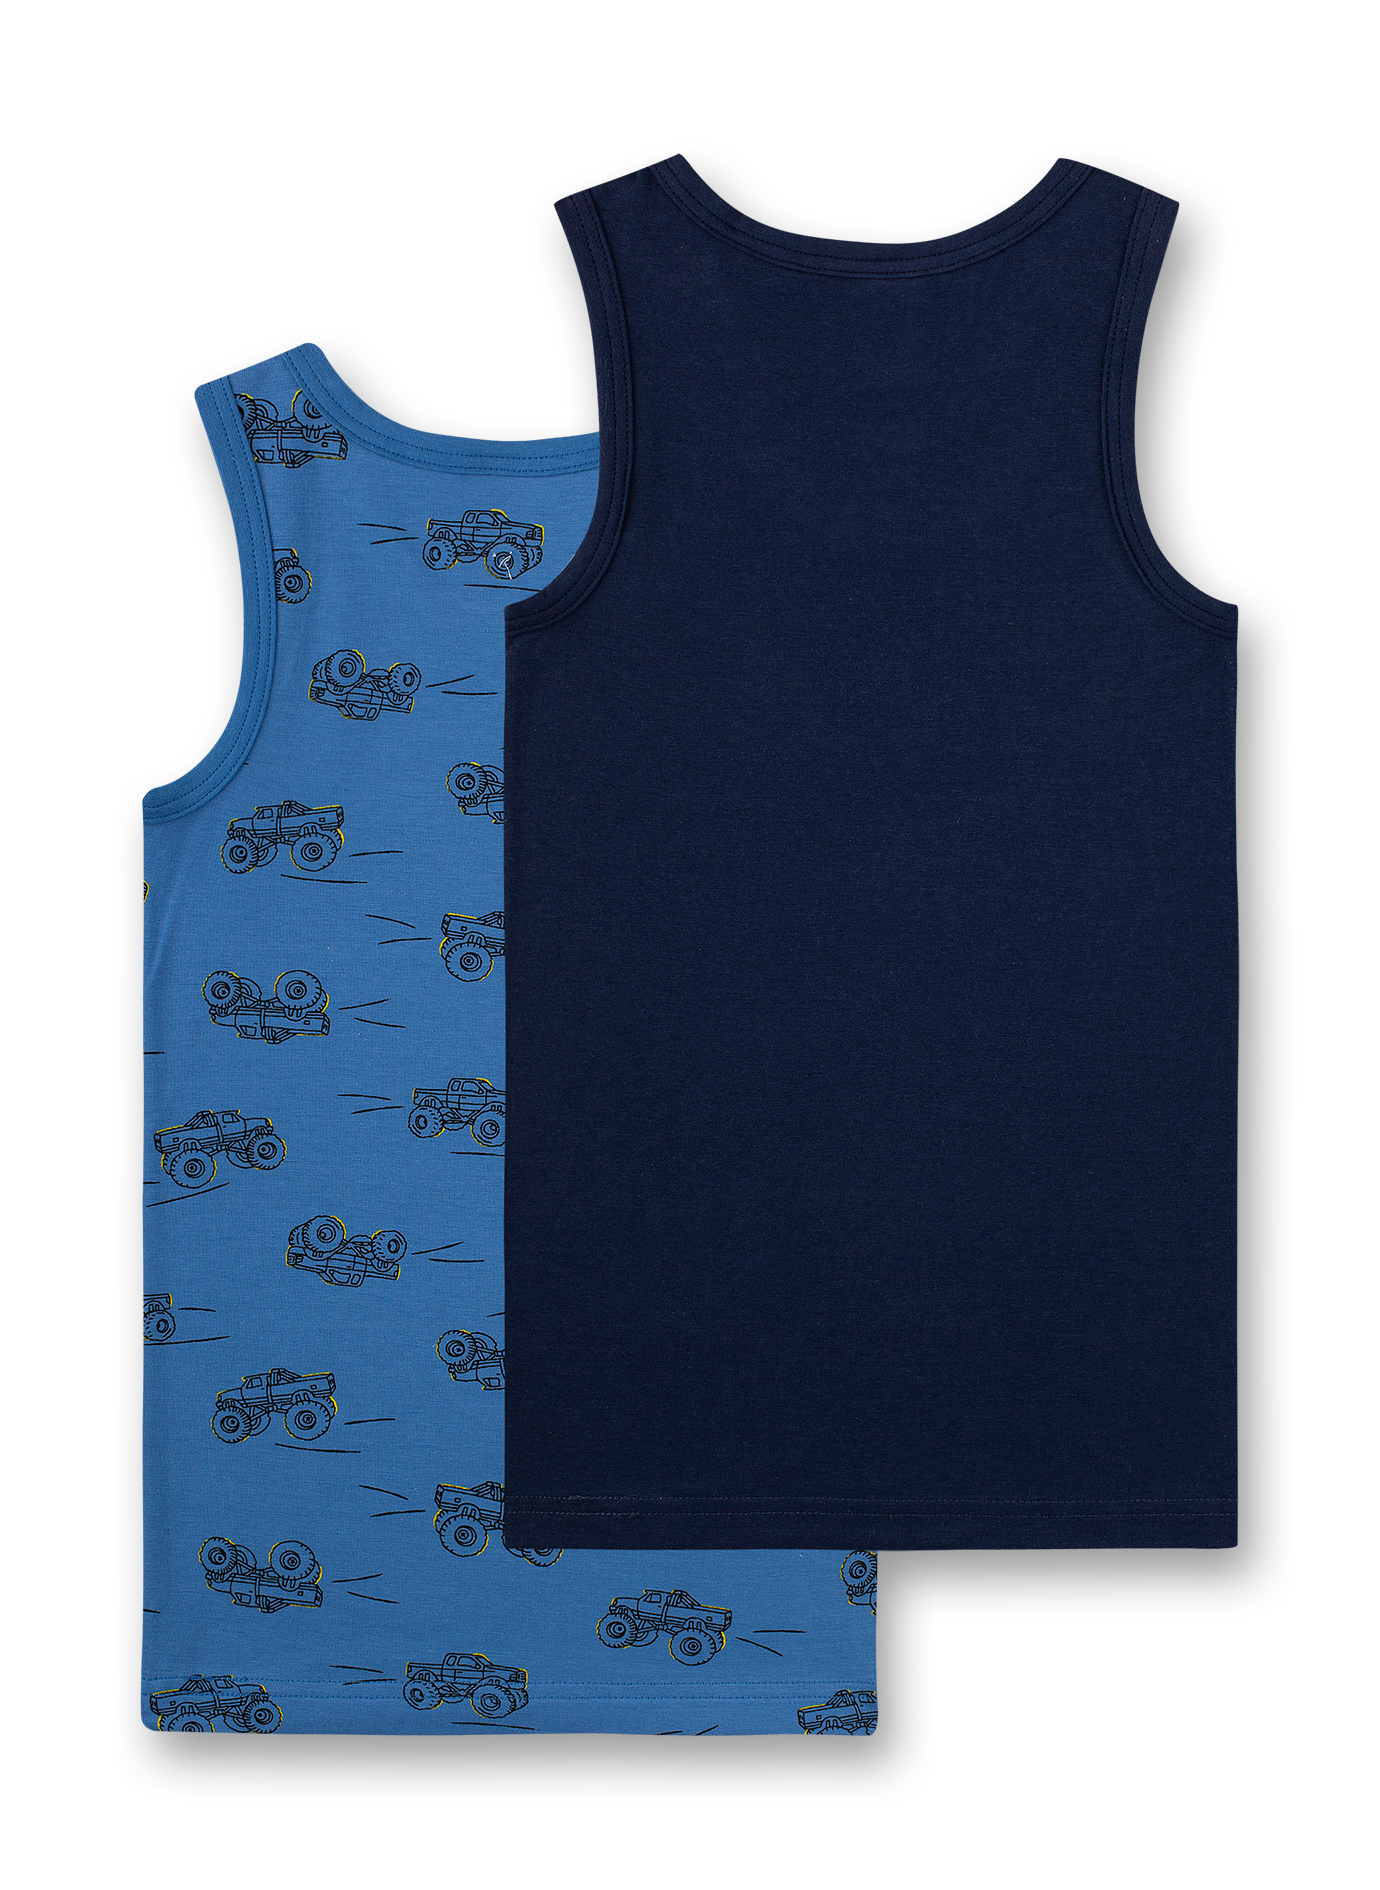 Jungen-Unterhemd (Doppelpack) Blau und Dunkelblau Bigfoot